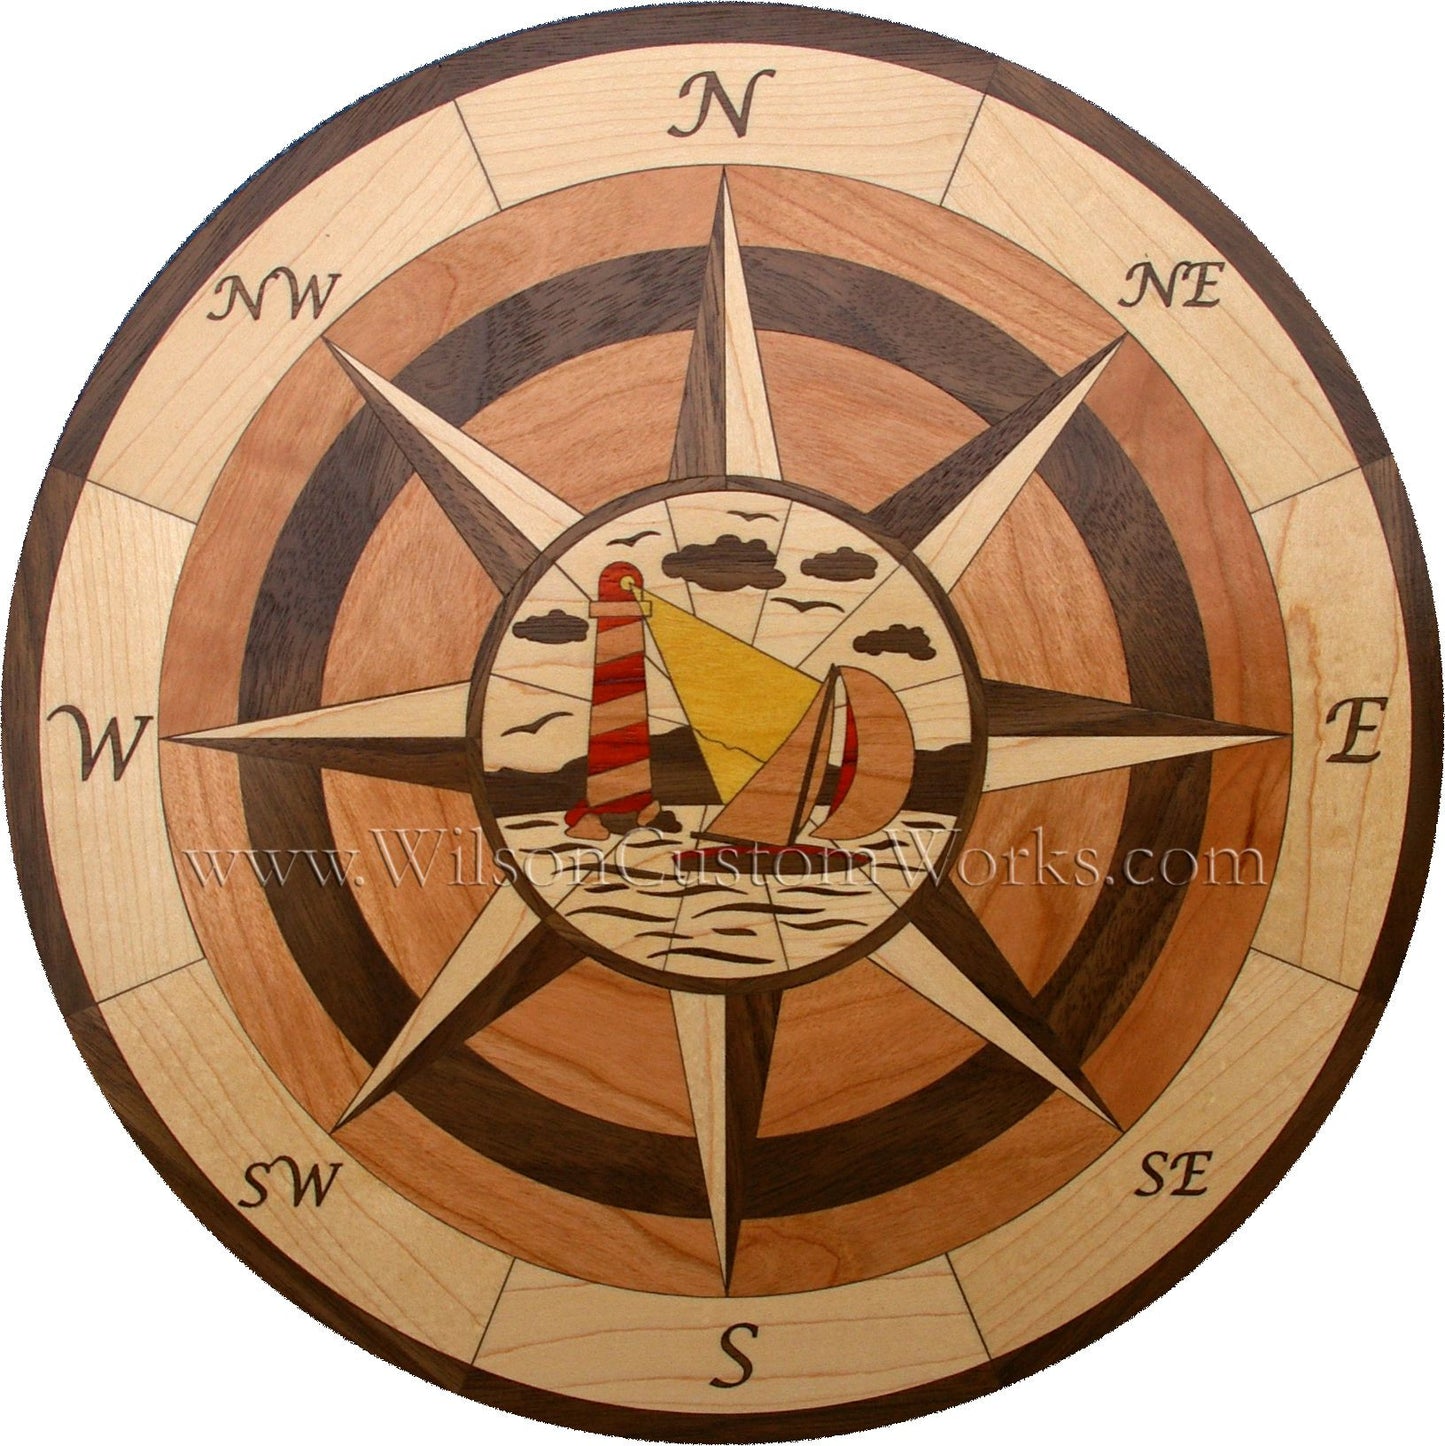 hardwood wood floor inlay medallion nautical compass rose sailboat nova scotia